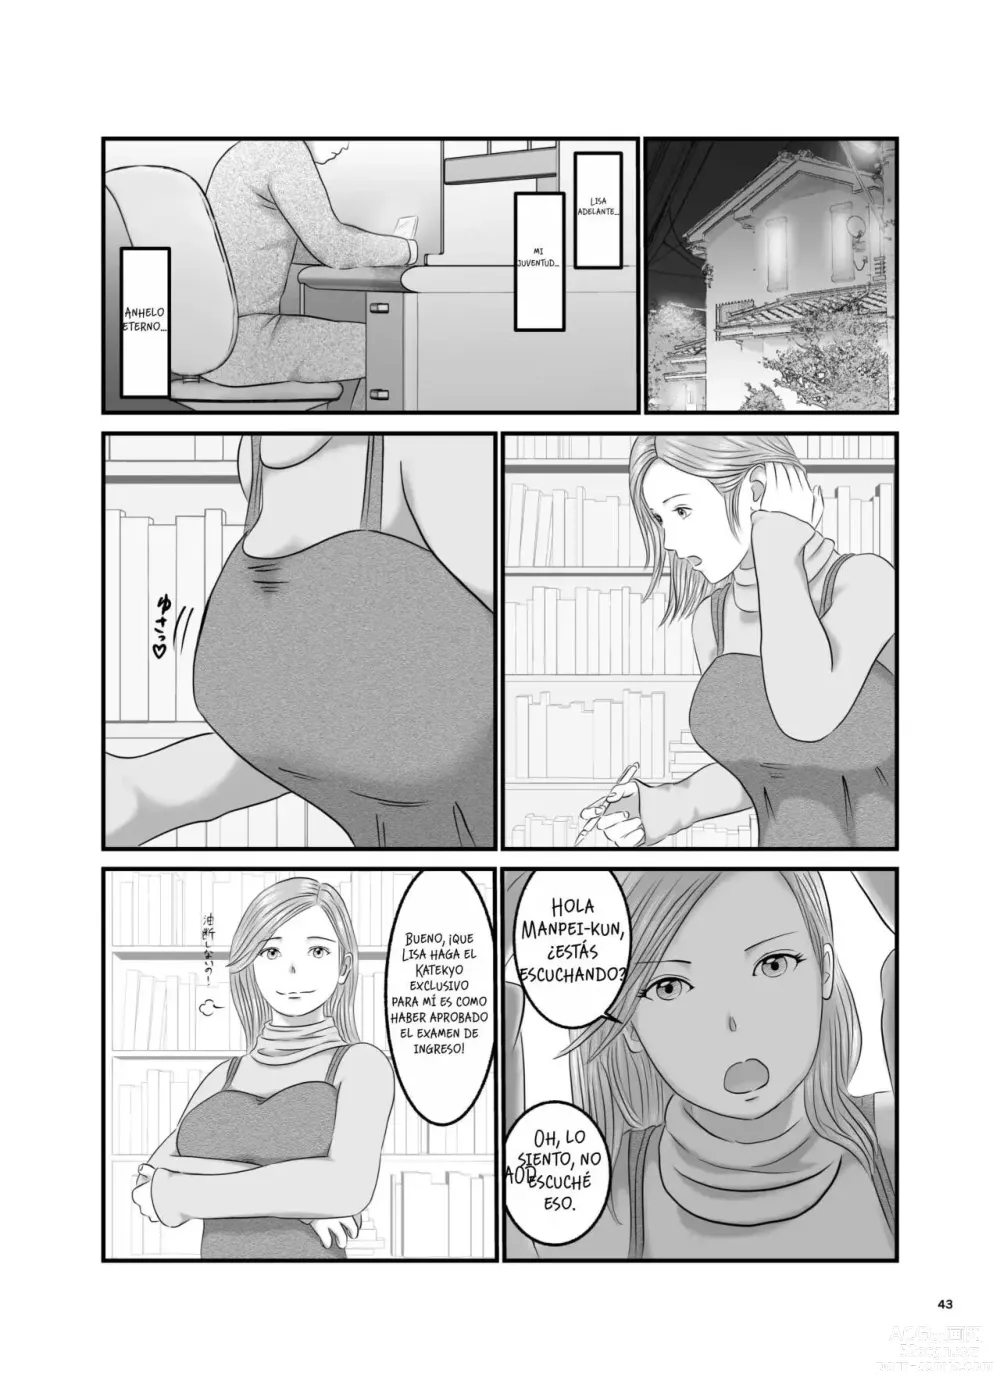 Page 43 of doujinshi Akogare no Hito wa Mou Owari!